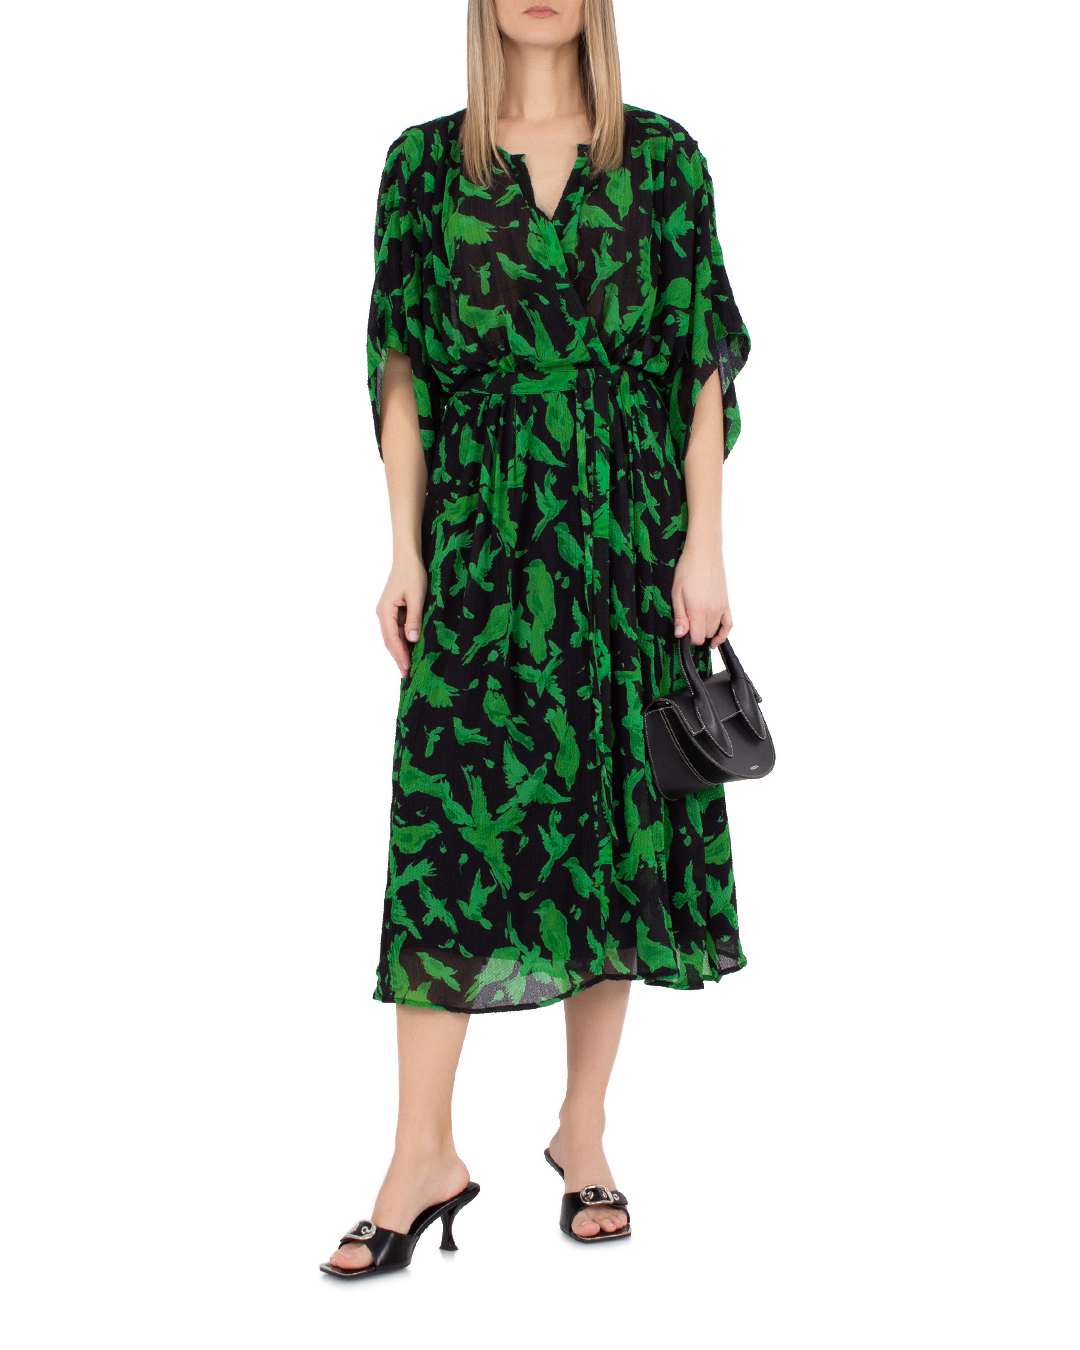 платье Essentiel EVRAY черный+зеленый m, размер m, цвет черный+зеленый EVRAY черный+зеленый m - фото 2